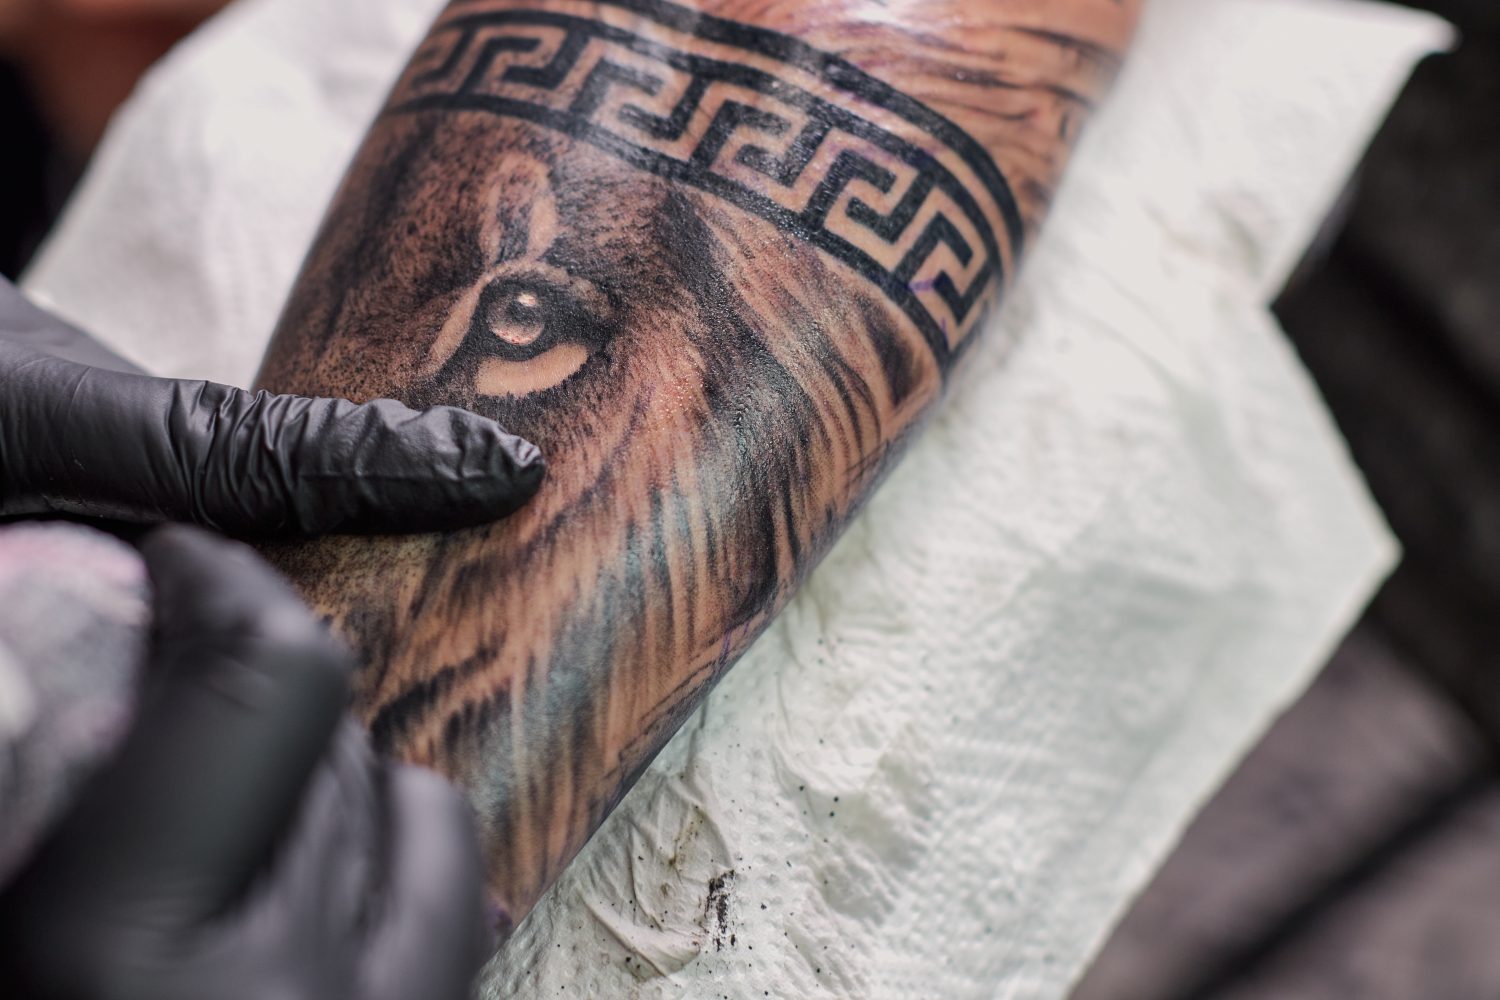 Tatuaggio di un leone sul braccio della cliente nel salone.  Tatuatore che lavora sul braccio di un cliente nel suo studio.